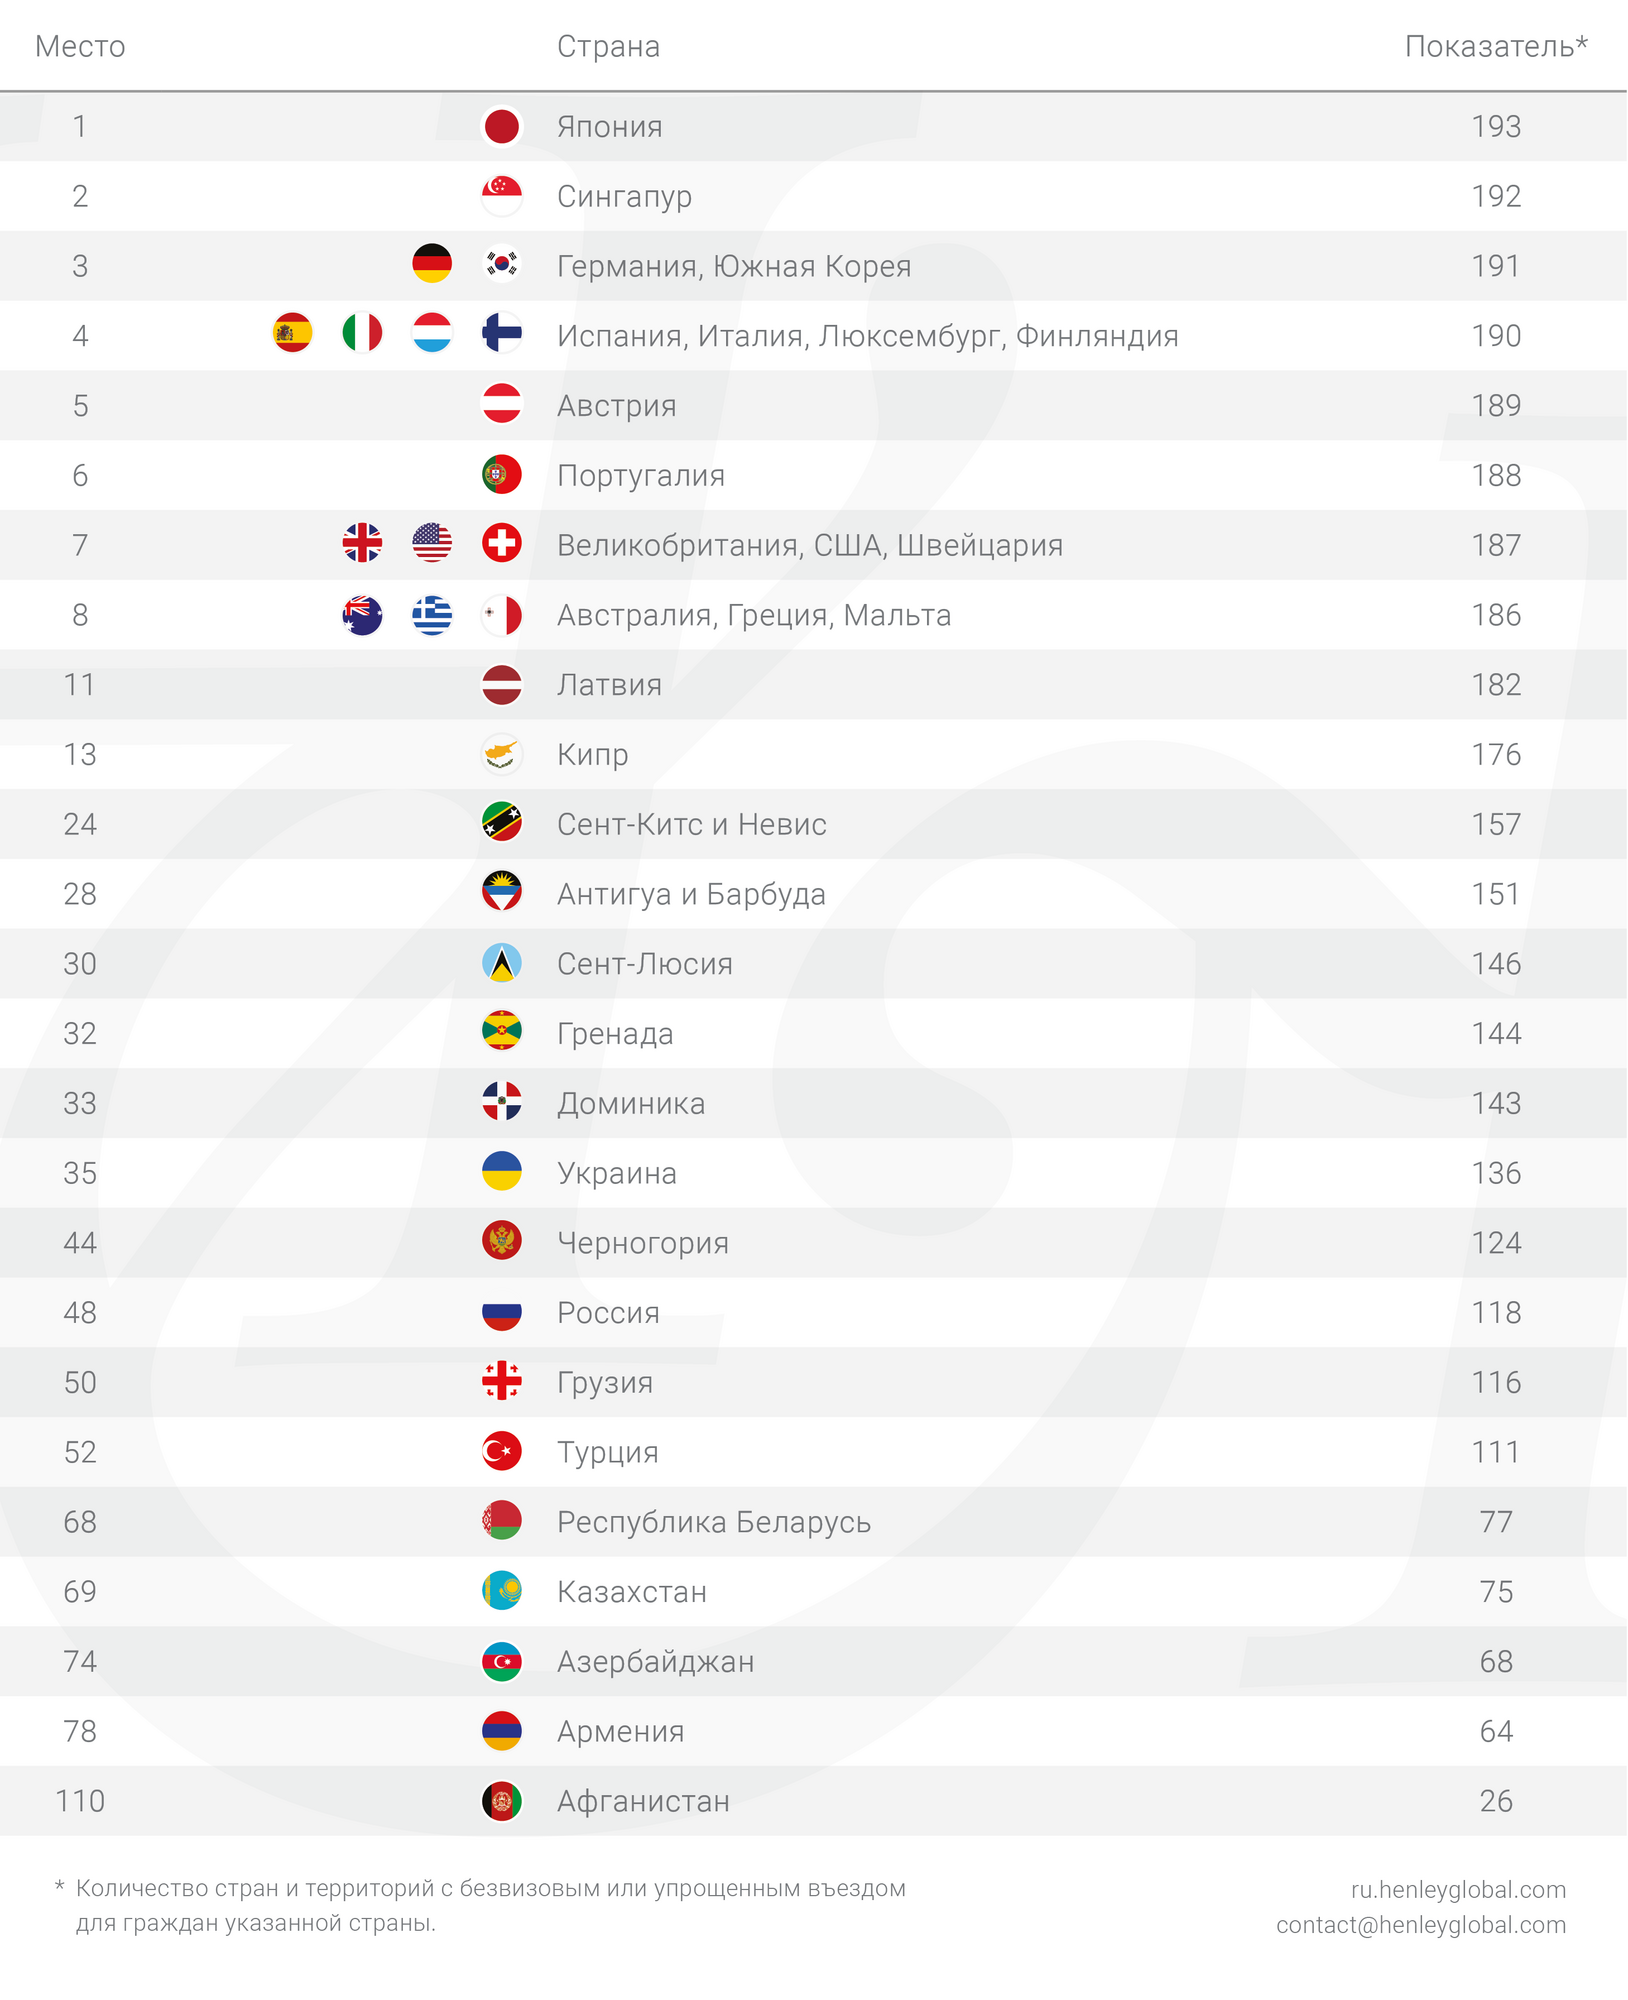 Страны-лидеры "Индекса паспортов"